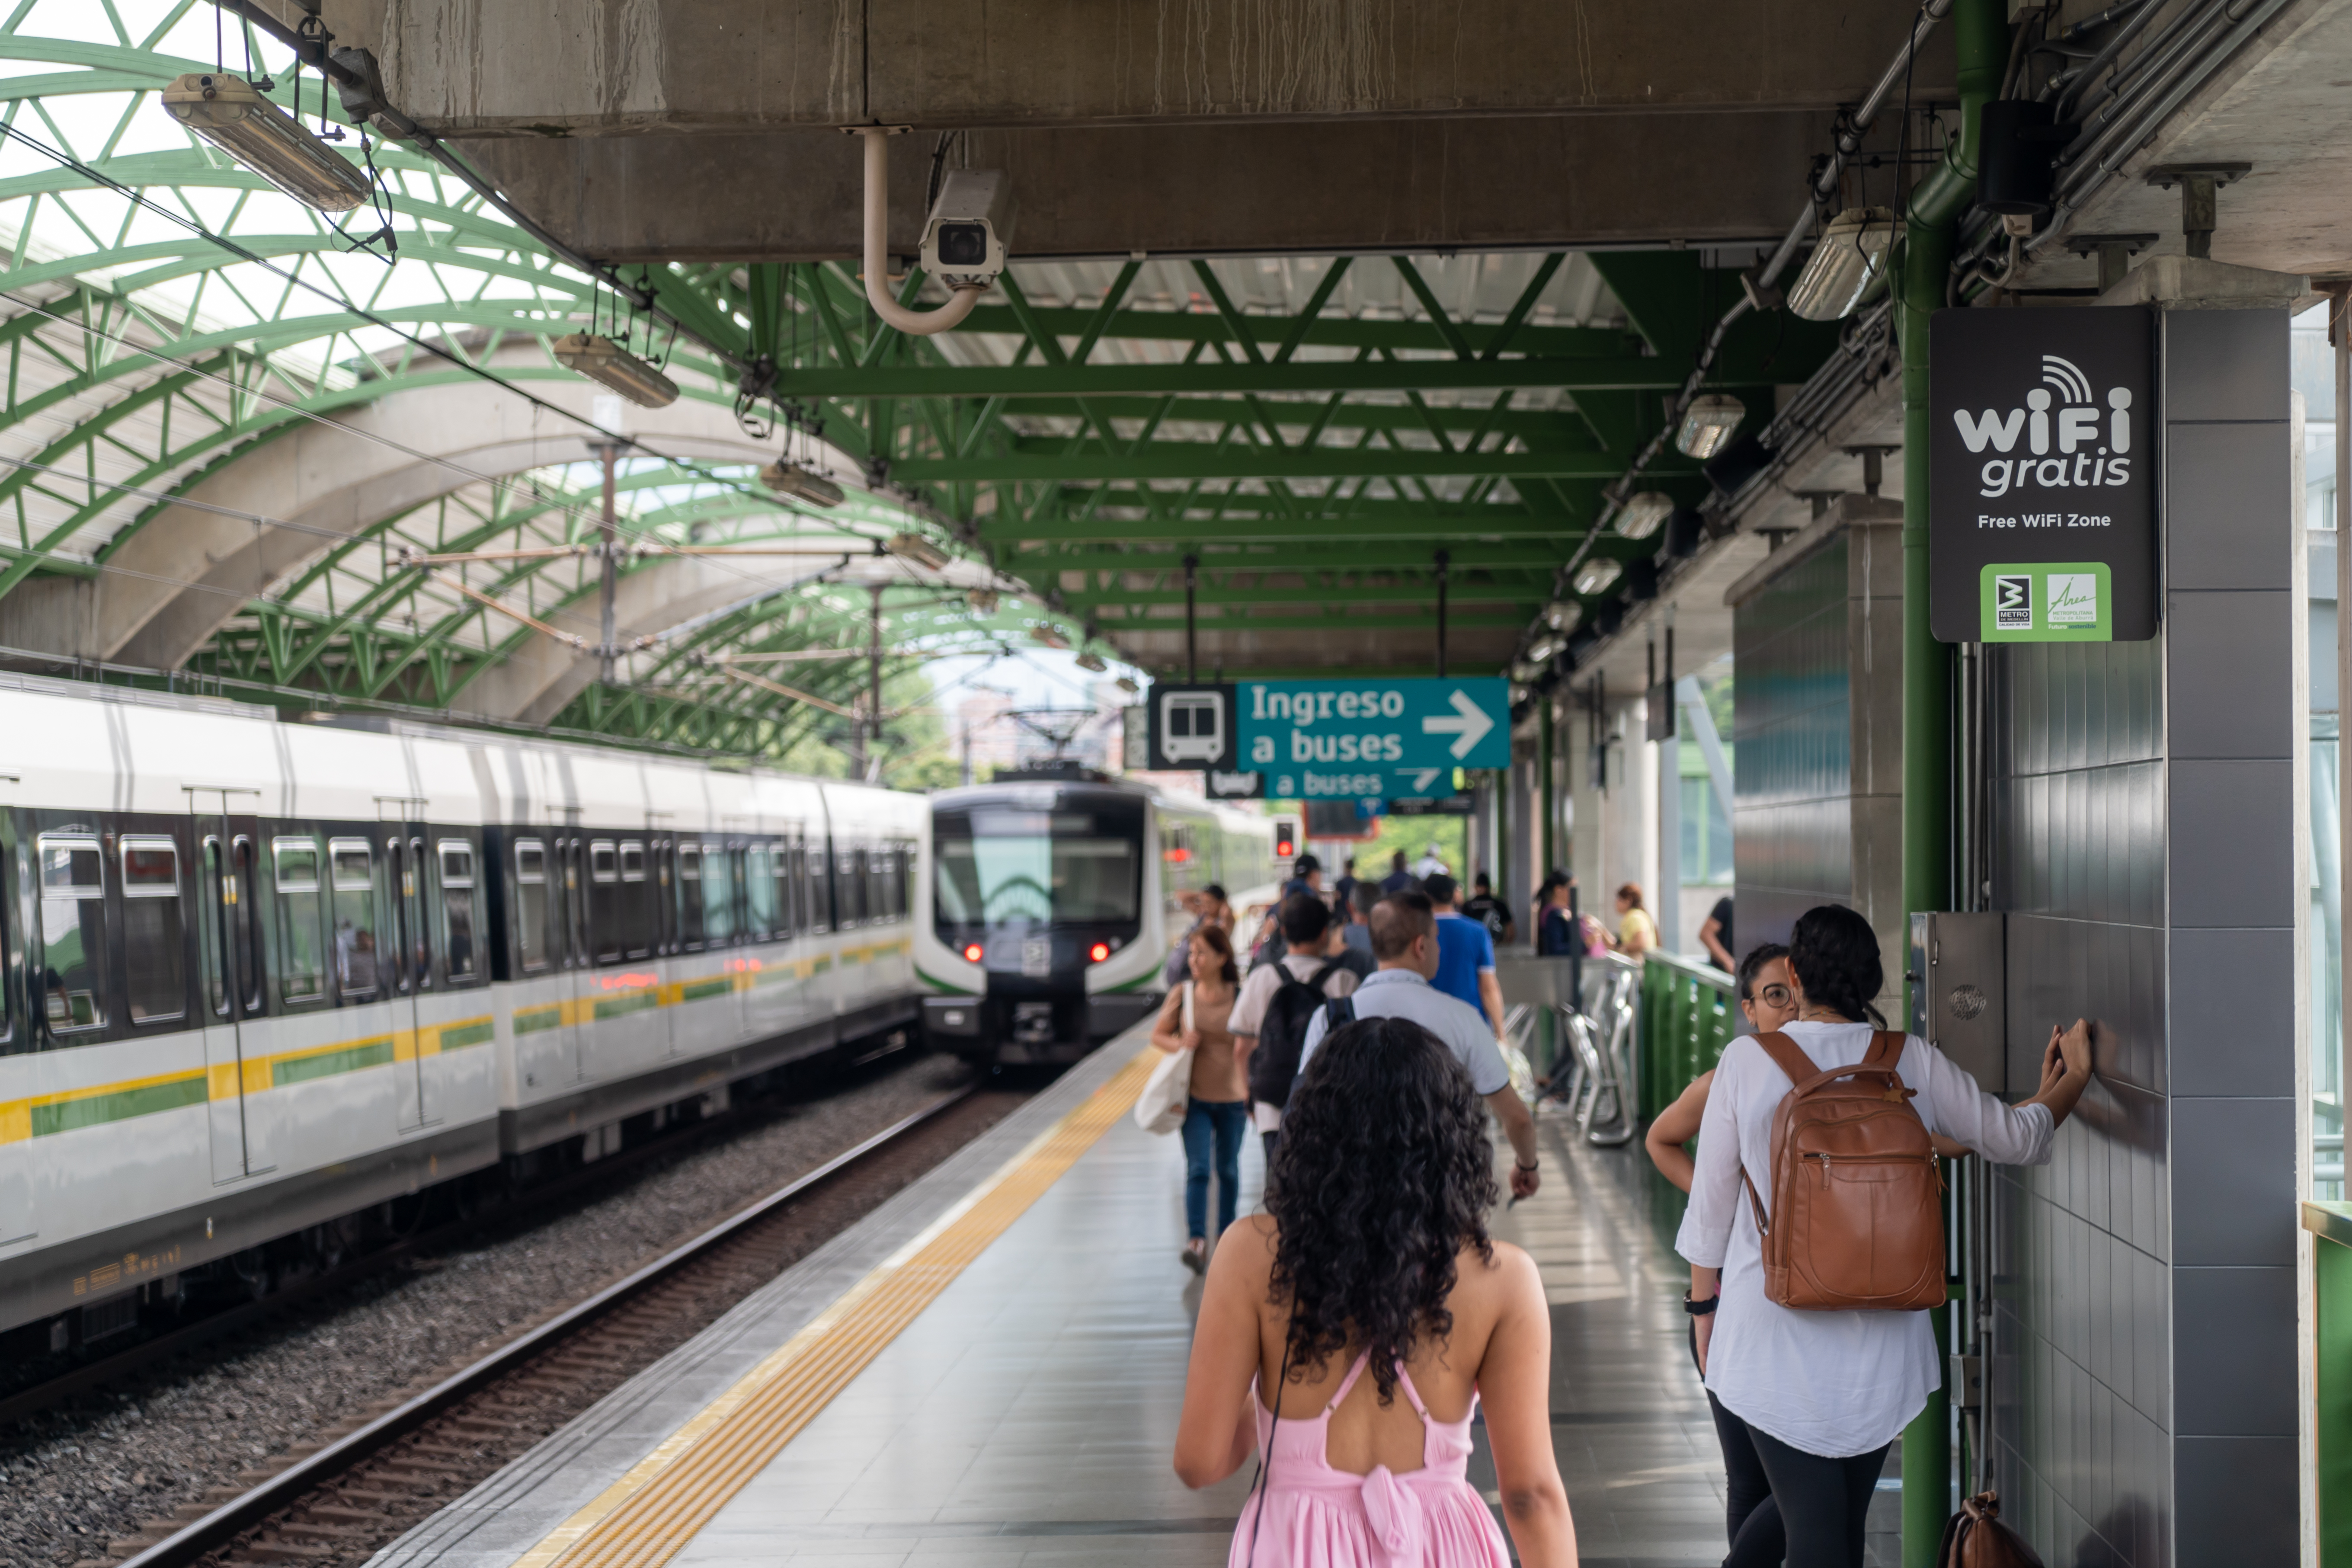 Líneas A y B del Metro de Medellín tienen wifi gratis: así puede conectarse